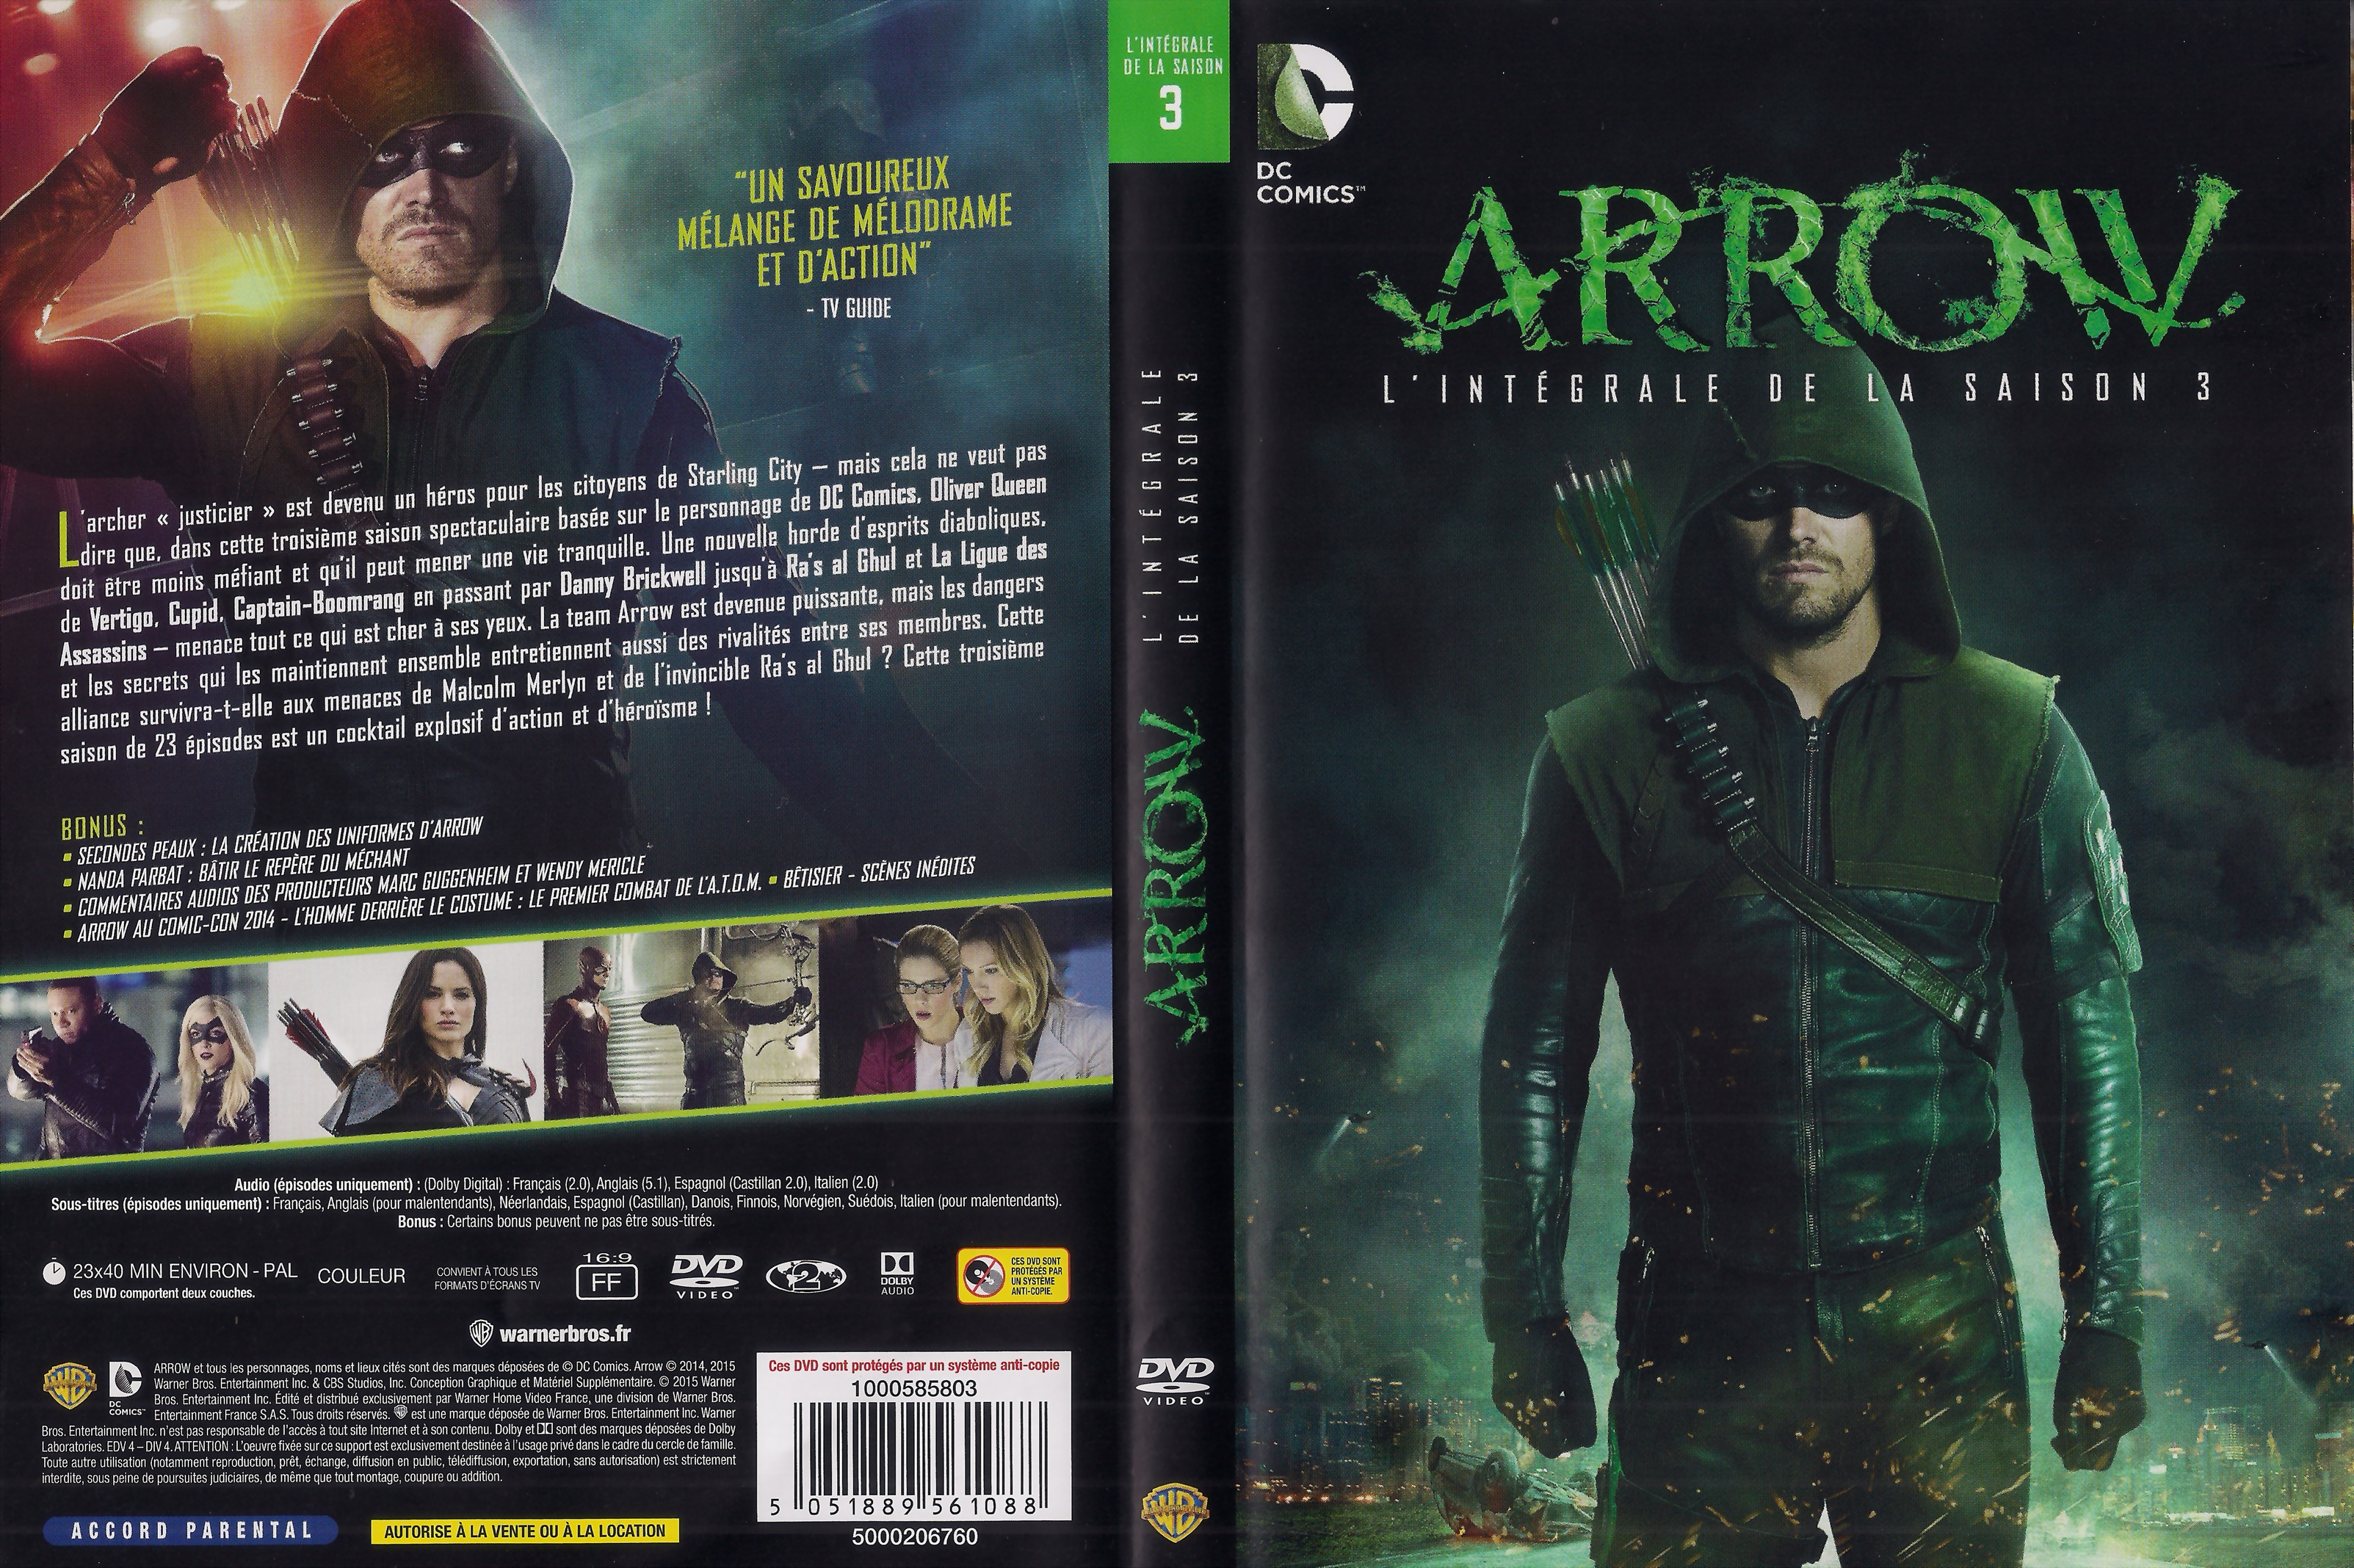 Jaquette DVD Arrow saison 3